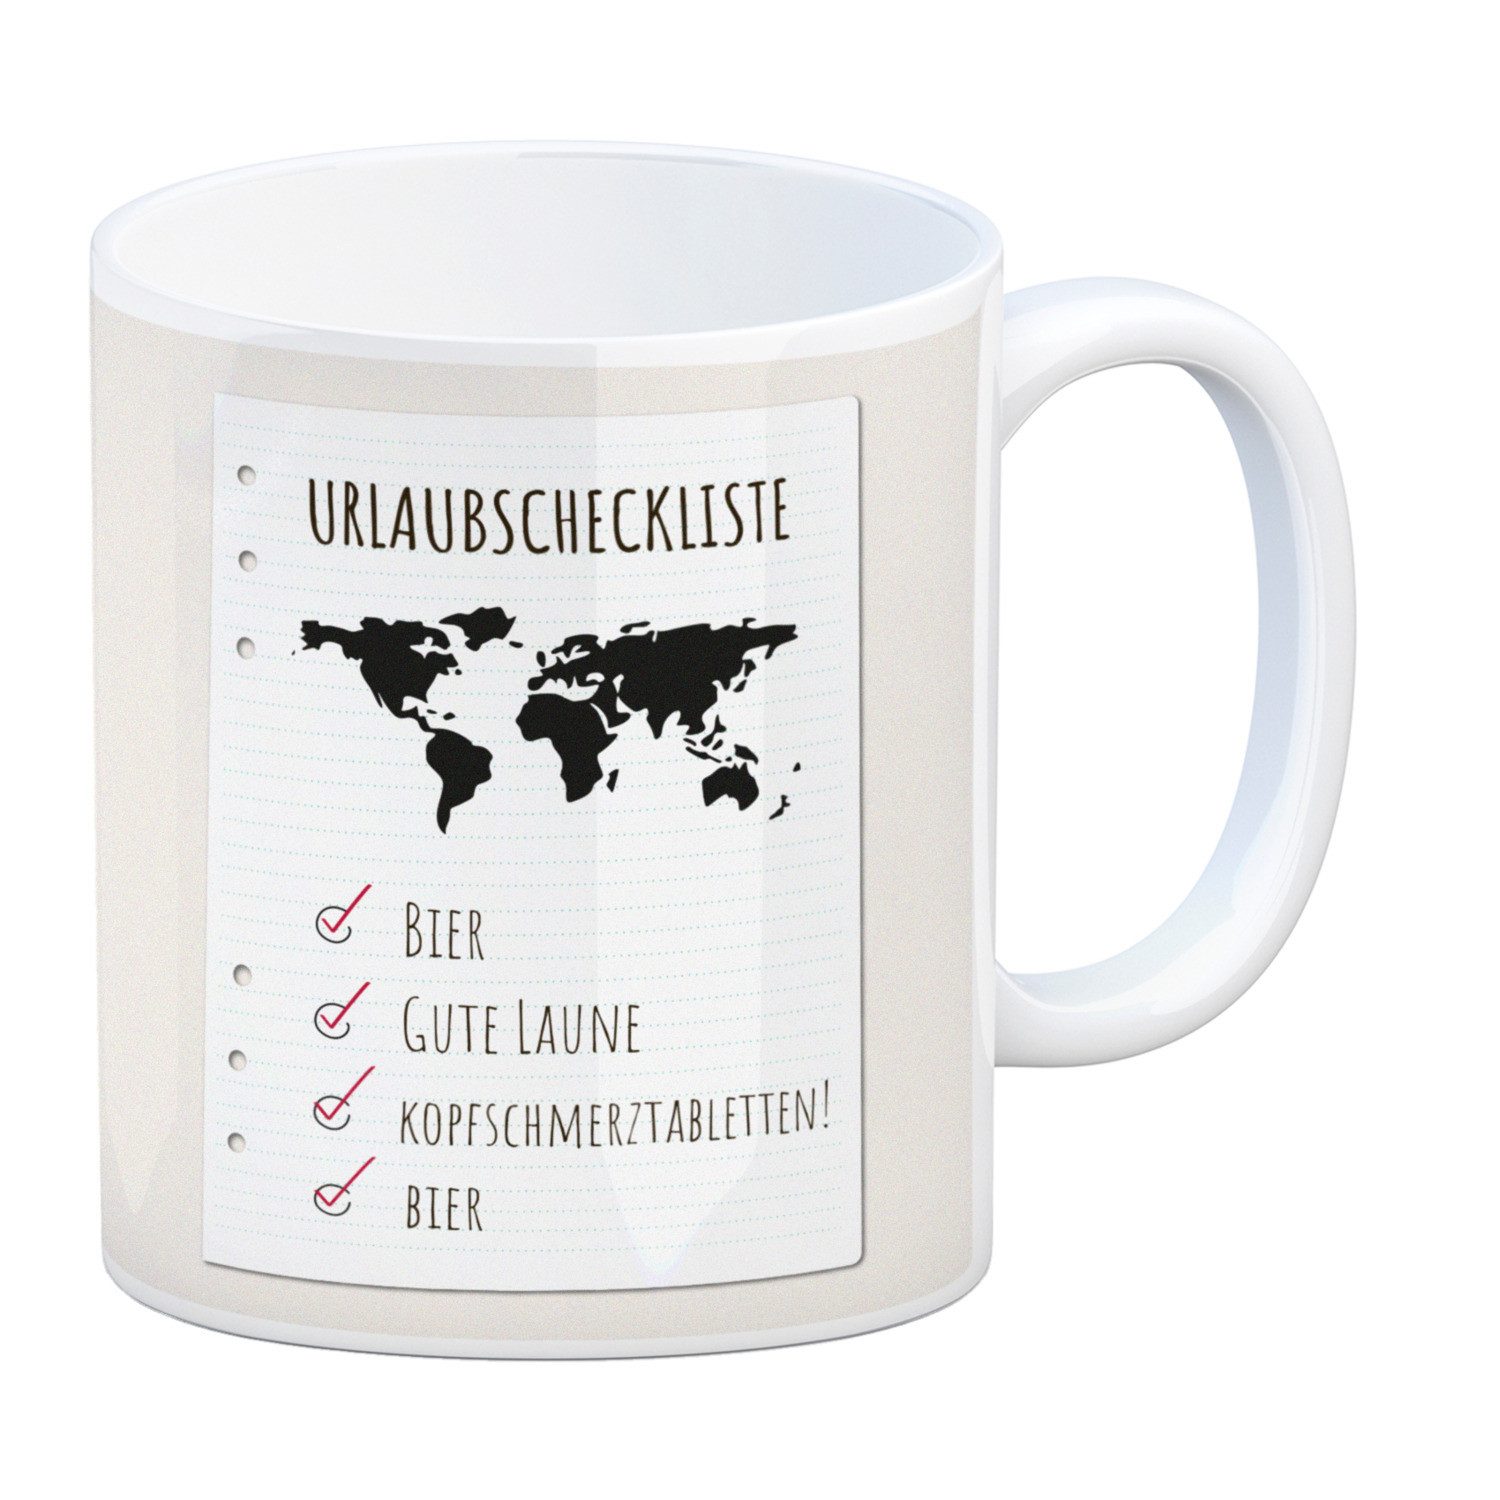 speecheese Tasse Kaffeebecher Urlaubscheckliste für Partyurlaub mit Weltkarte